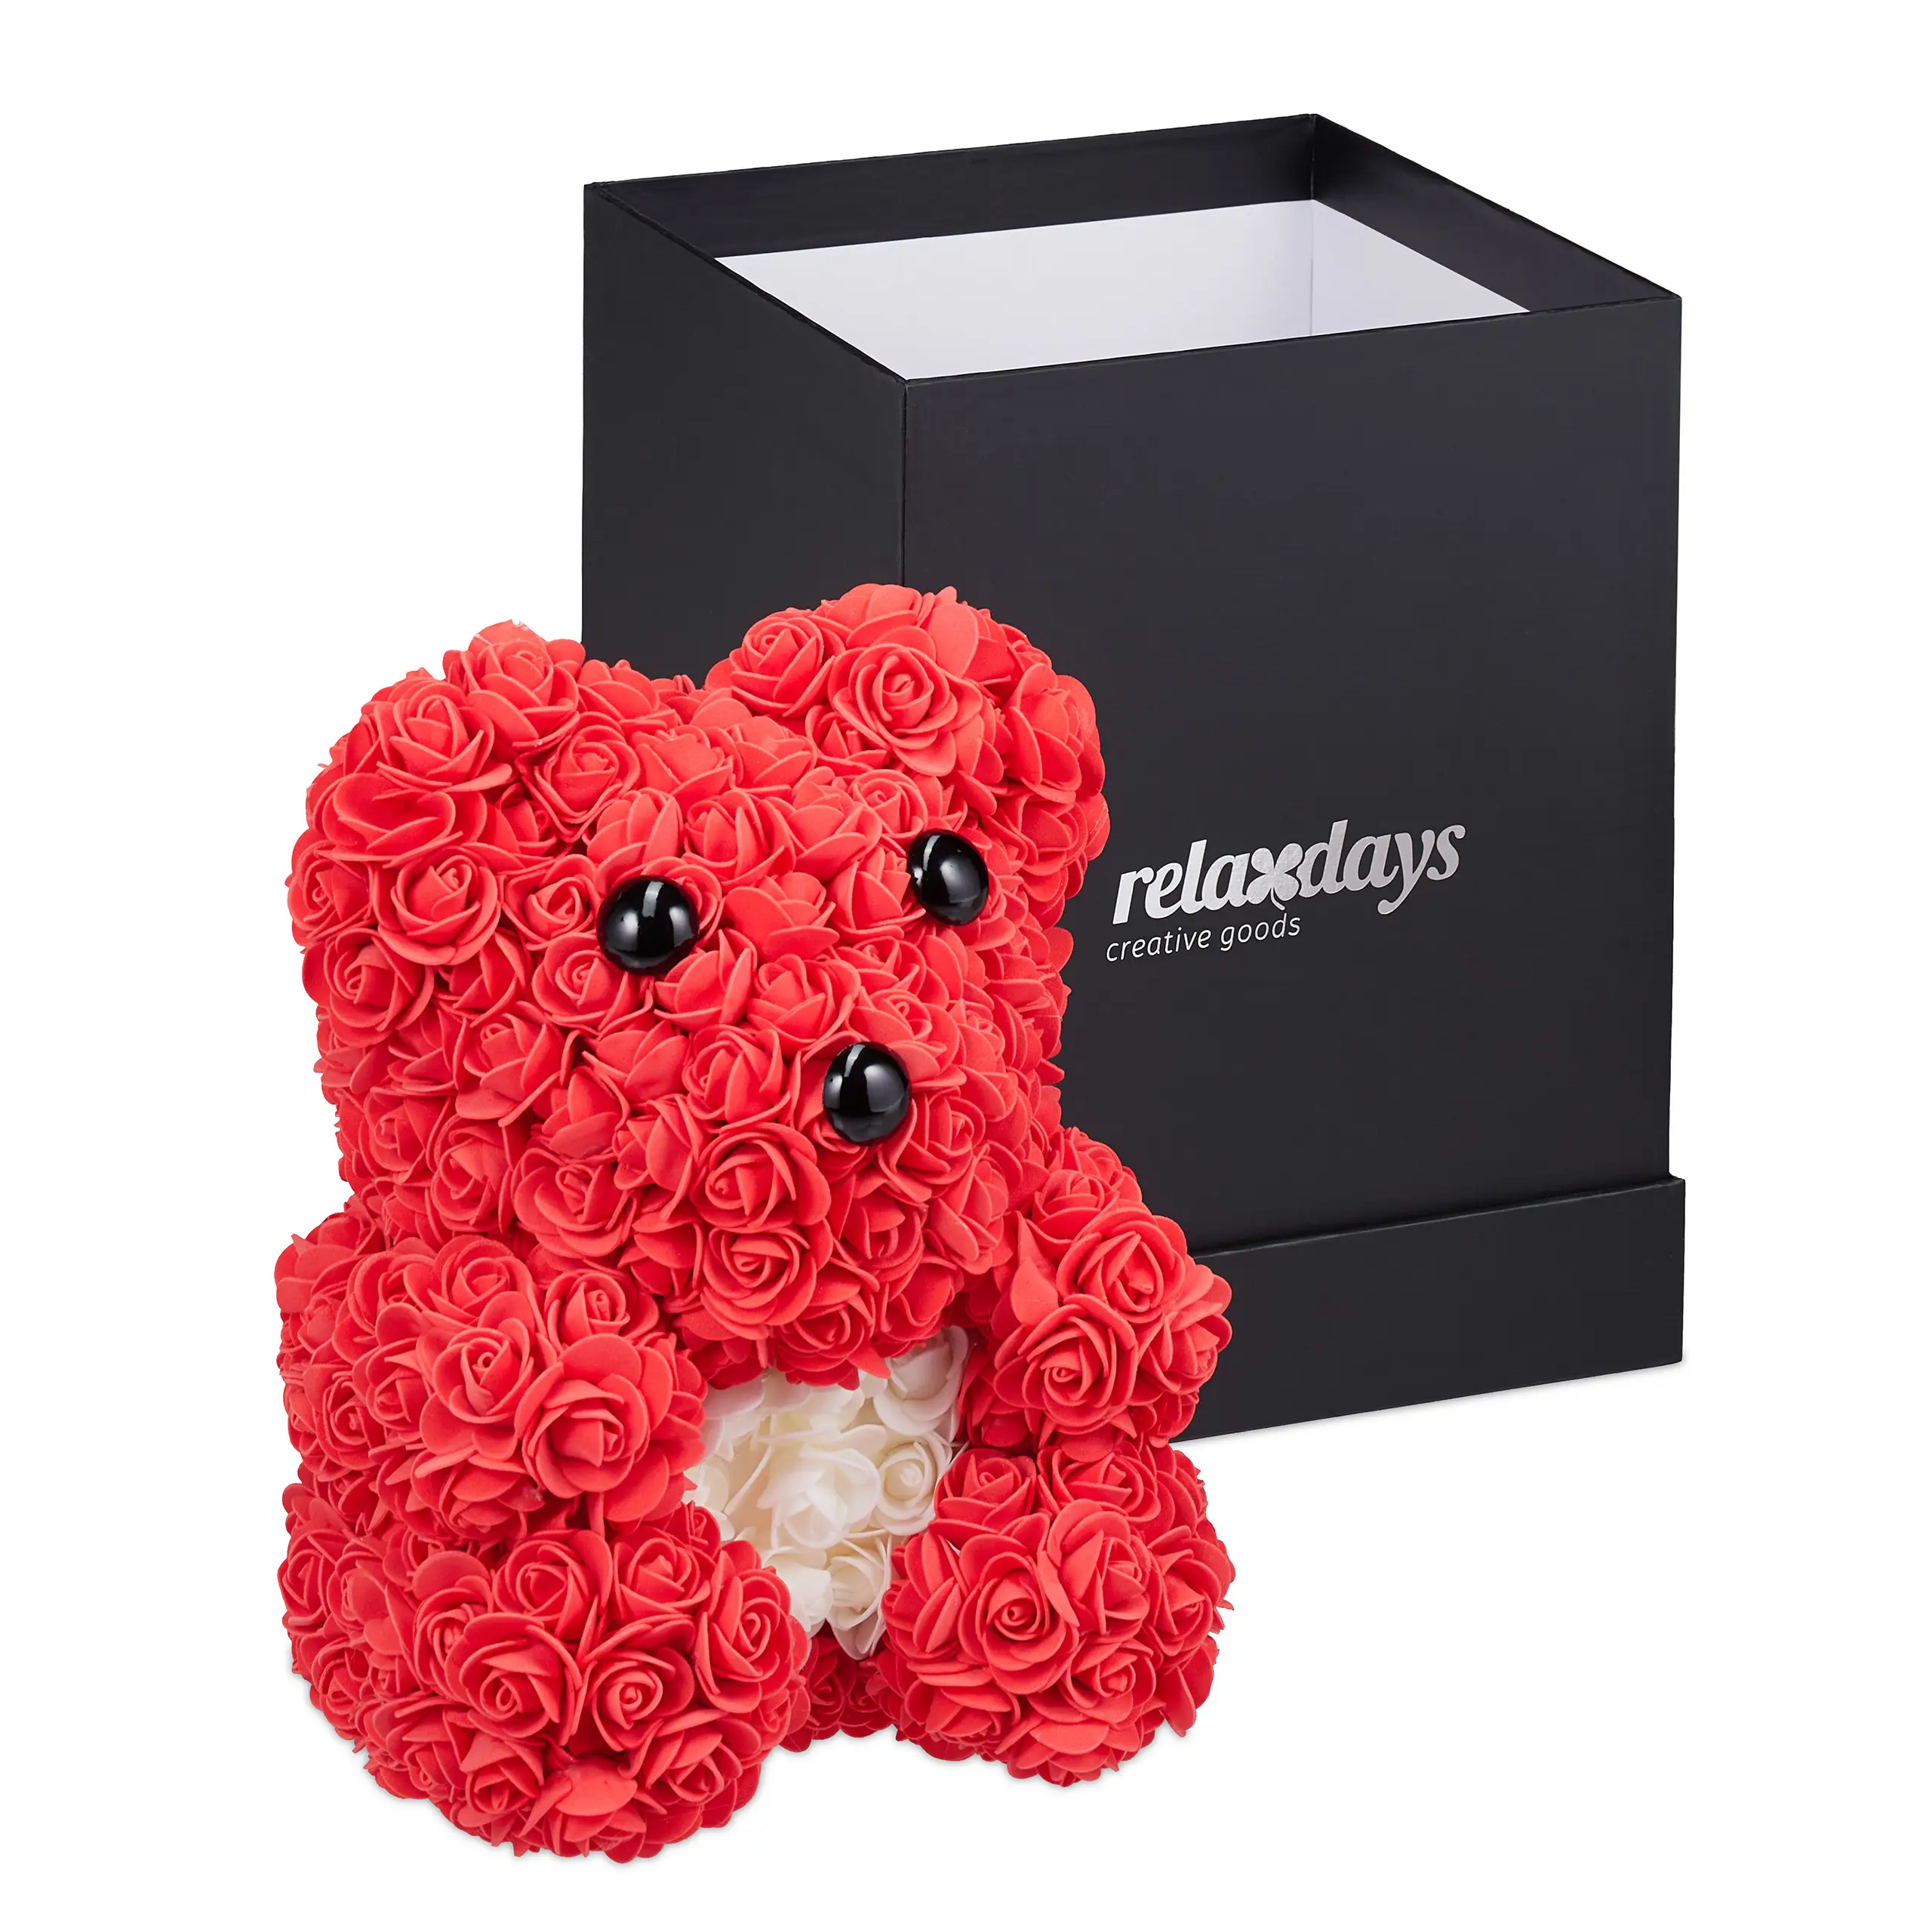 Roter Rosen Teddyb盲r mit Geschenkbox